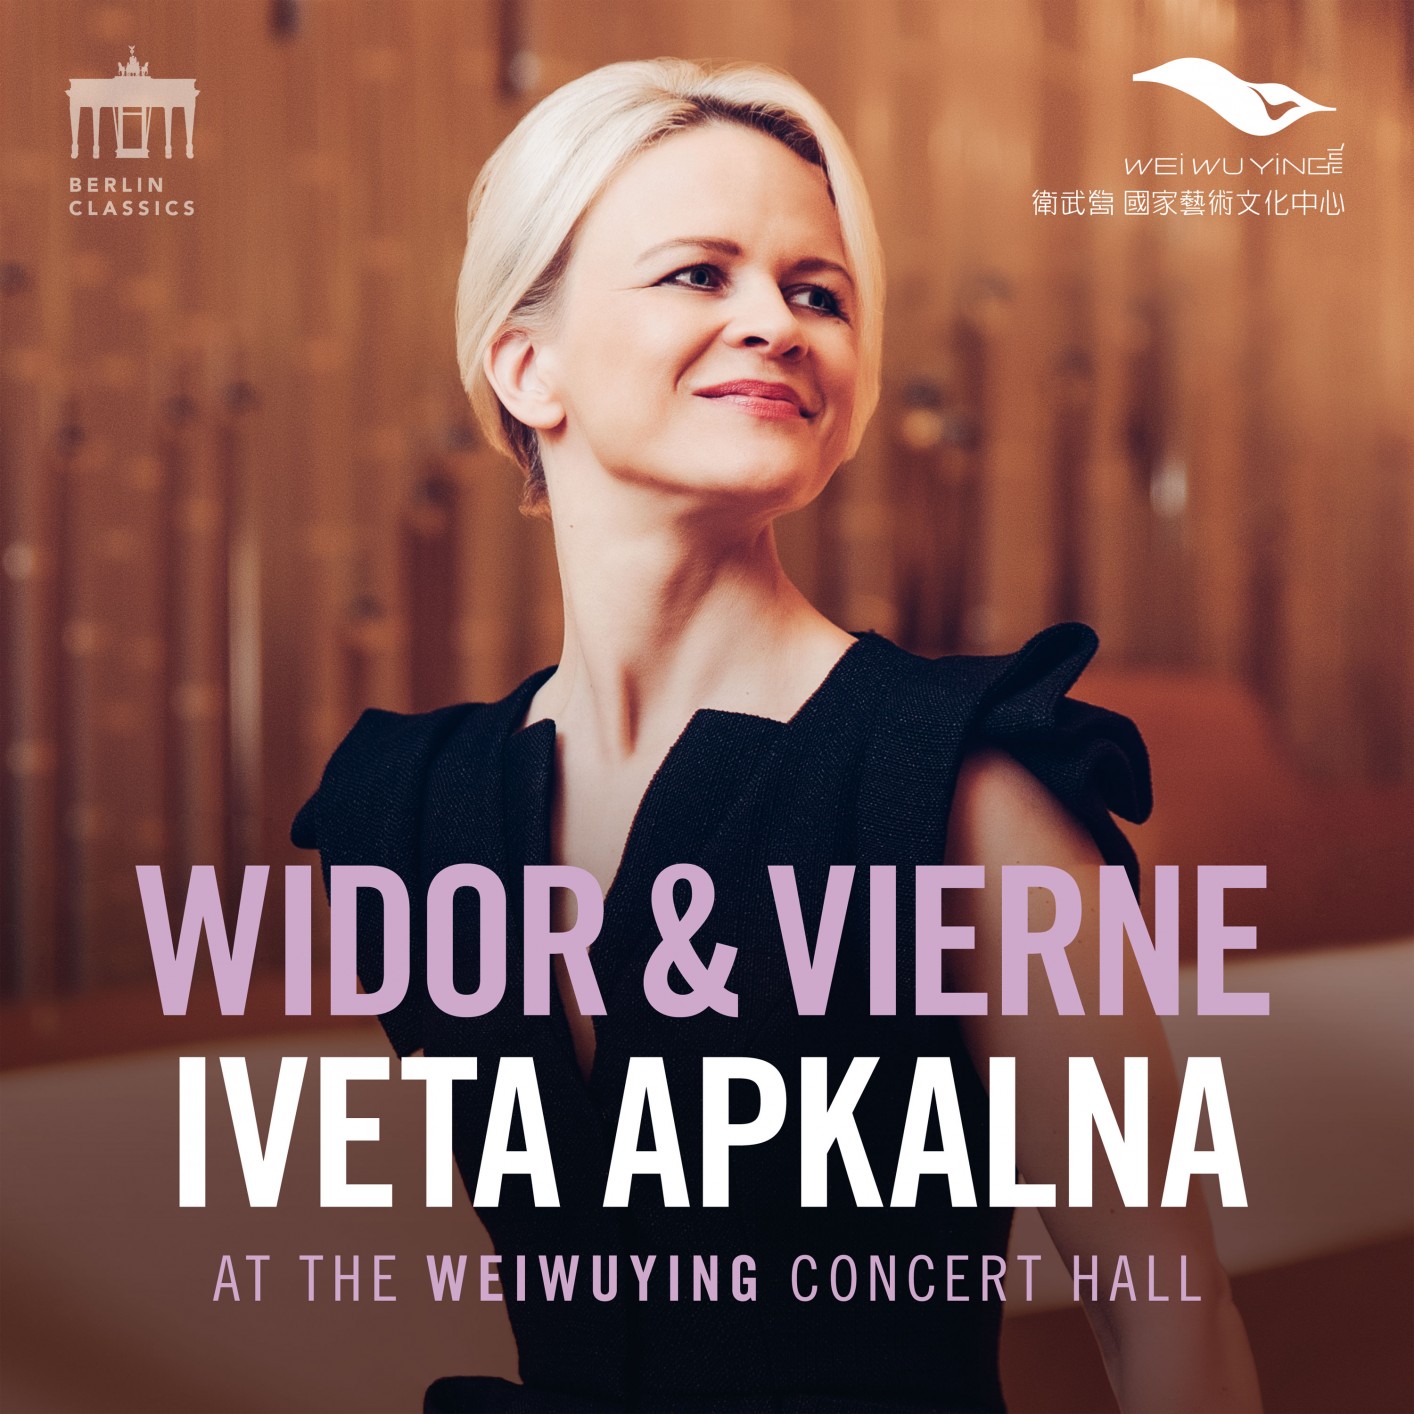 Iveta Apkalna - Widor & Vierne (Iveta Apkalna at the Weiwuying Concert Hall) (2020) [FLAC 24bit/96kHz]